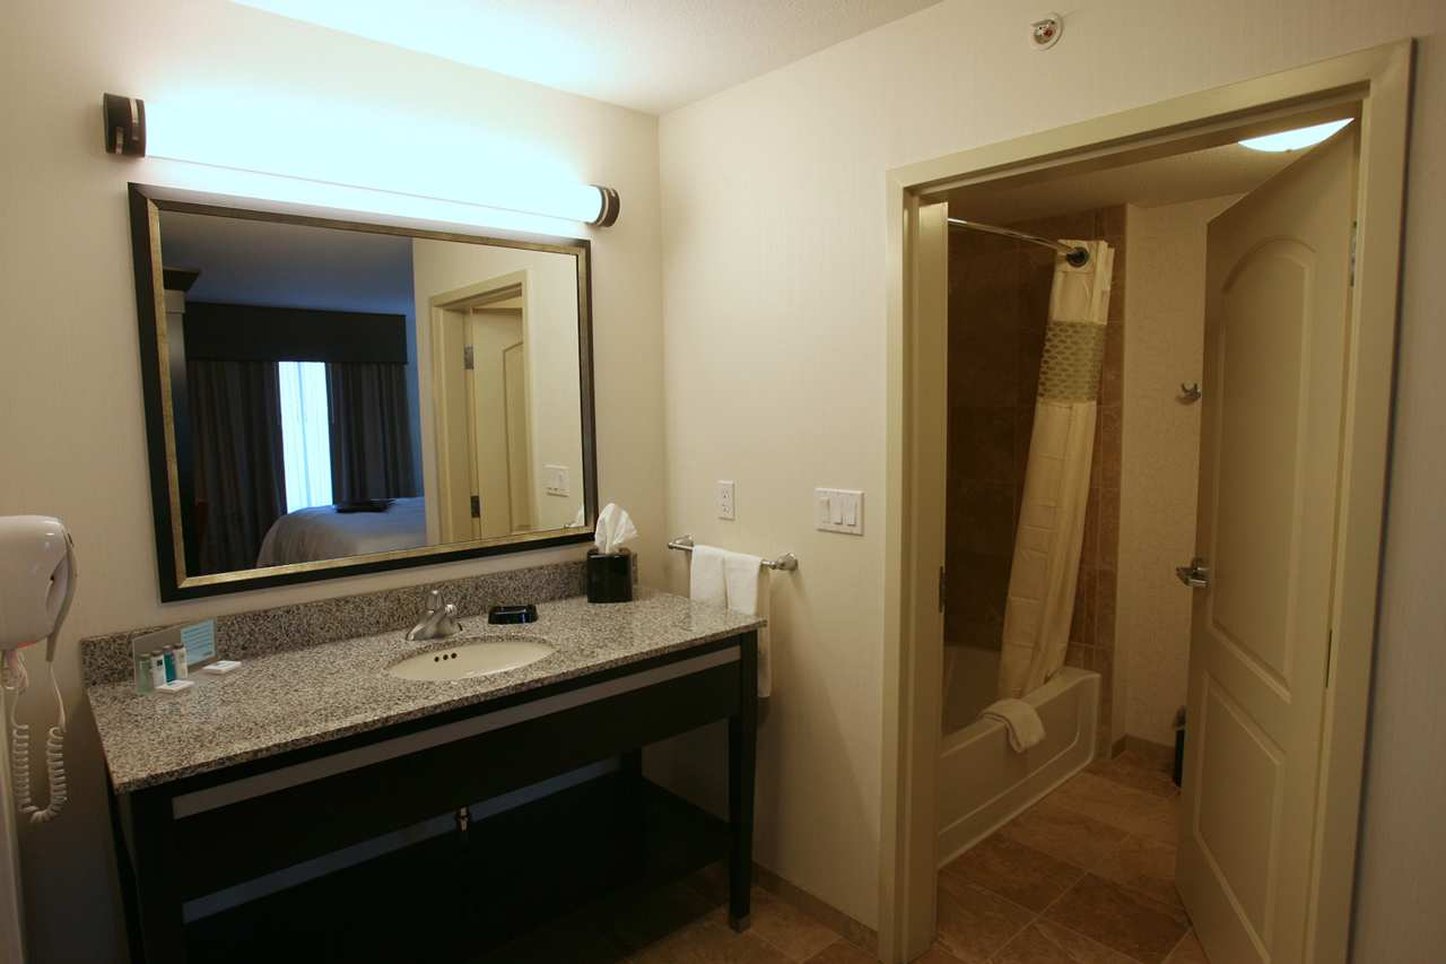 Hampton Inn & Suites by Hilton Red Deer